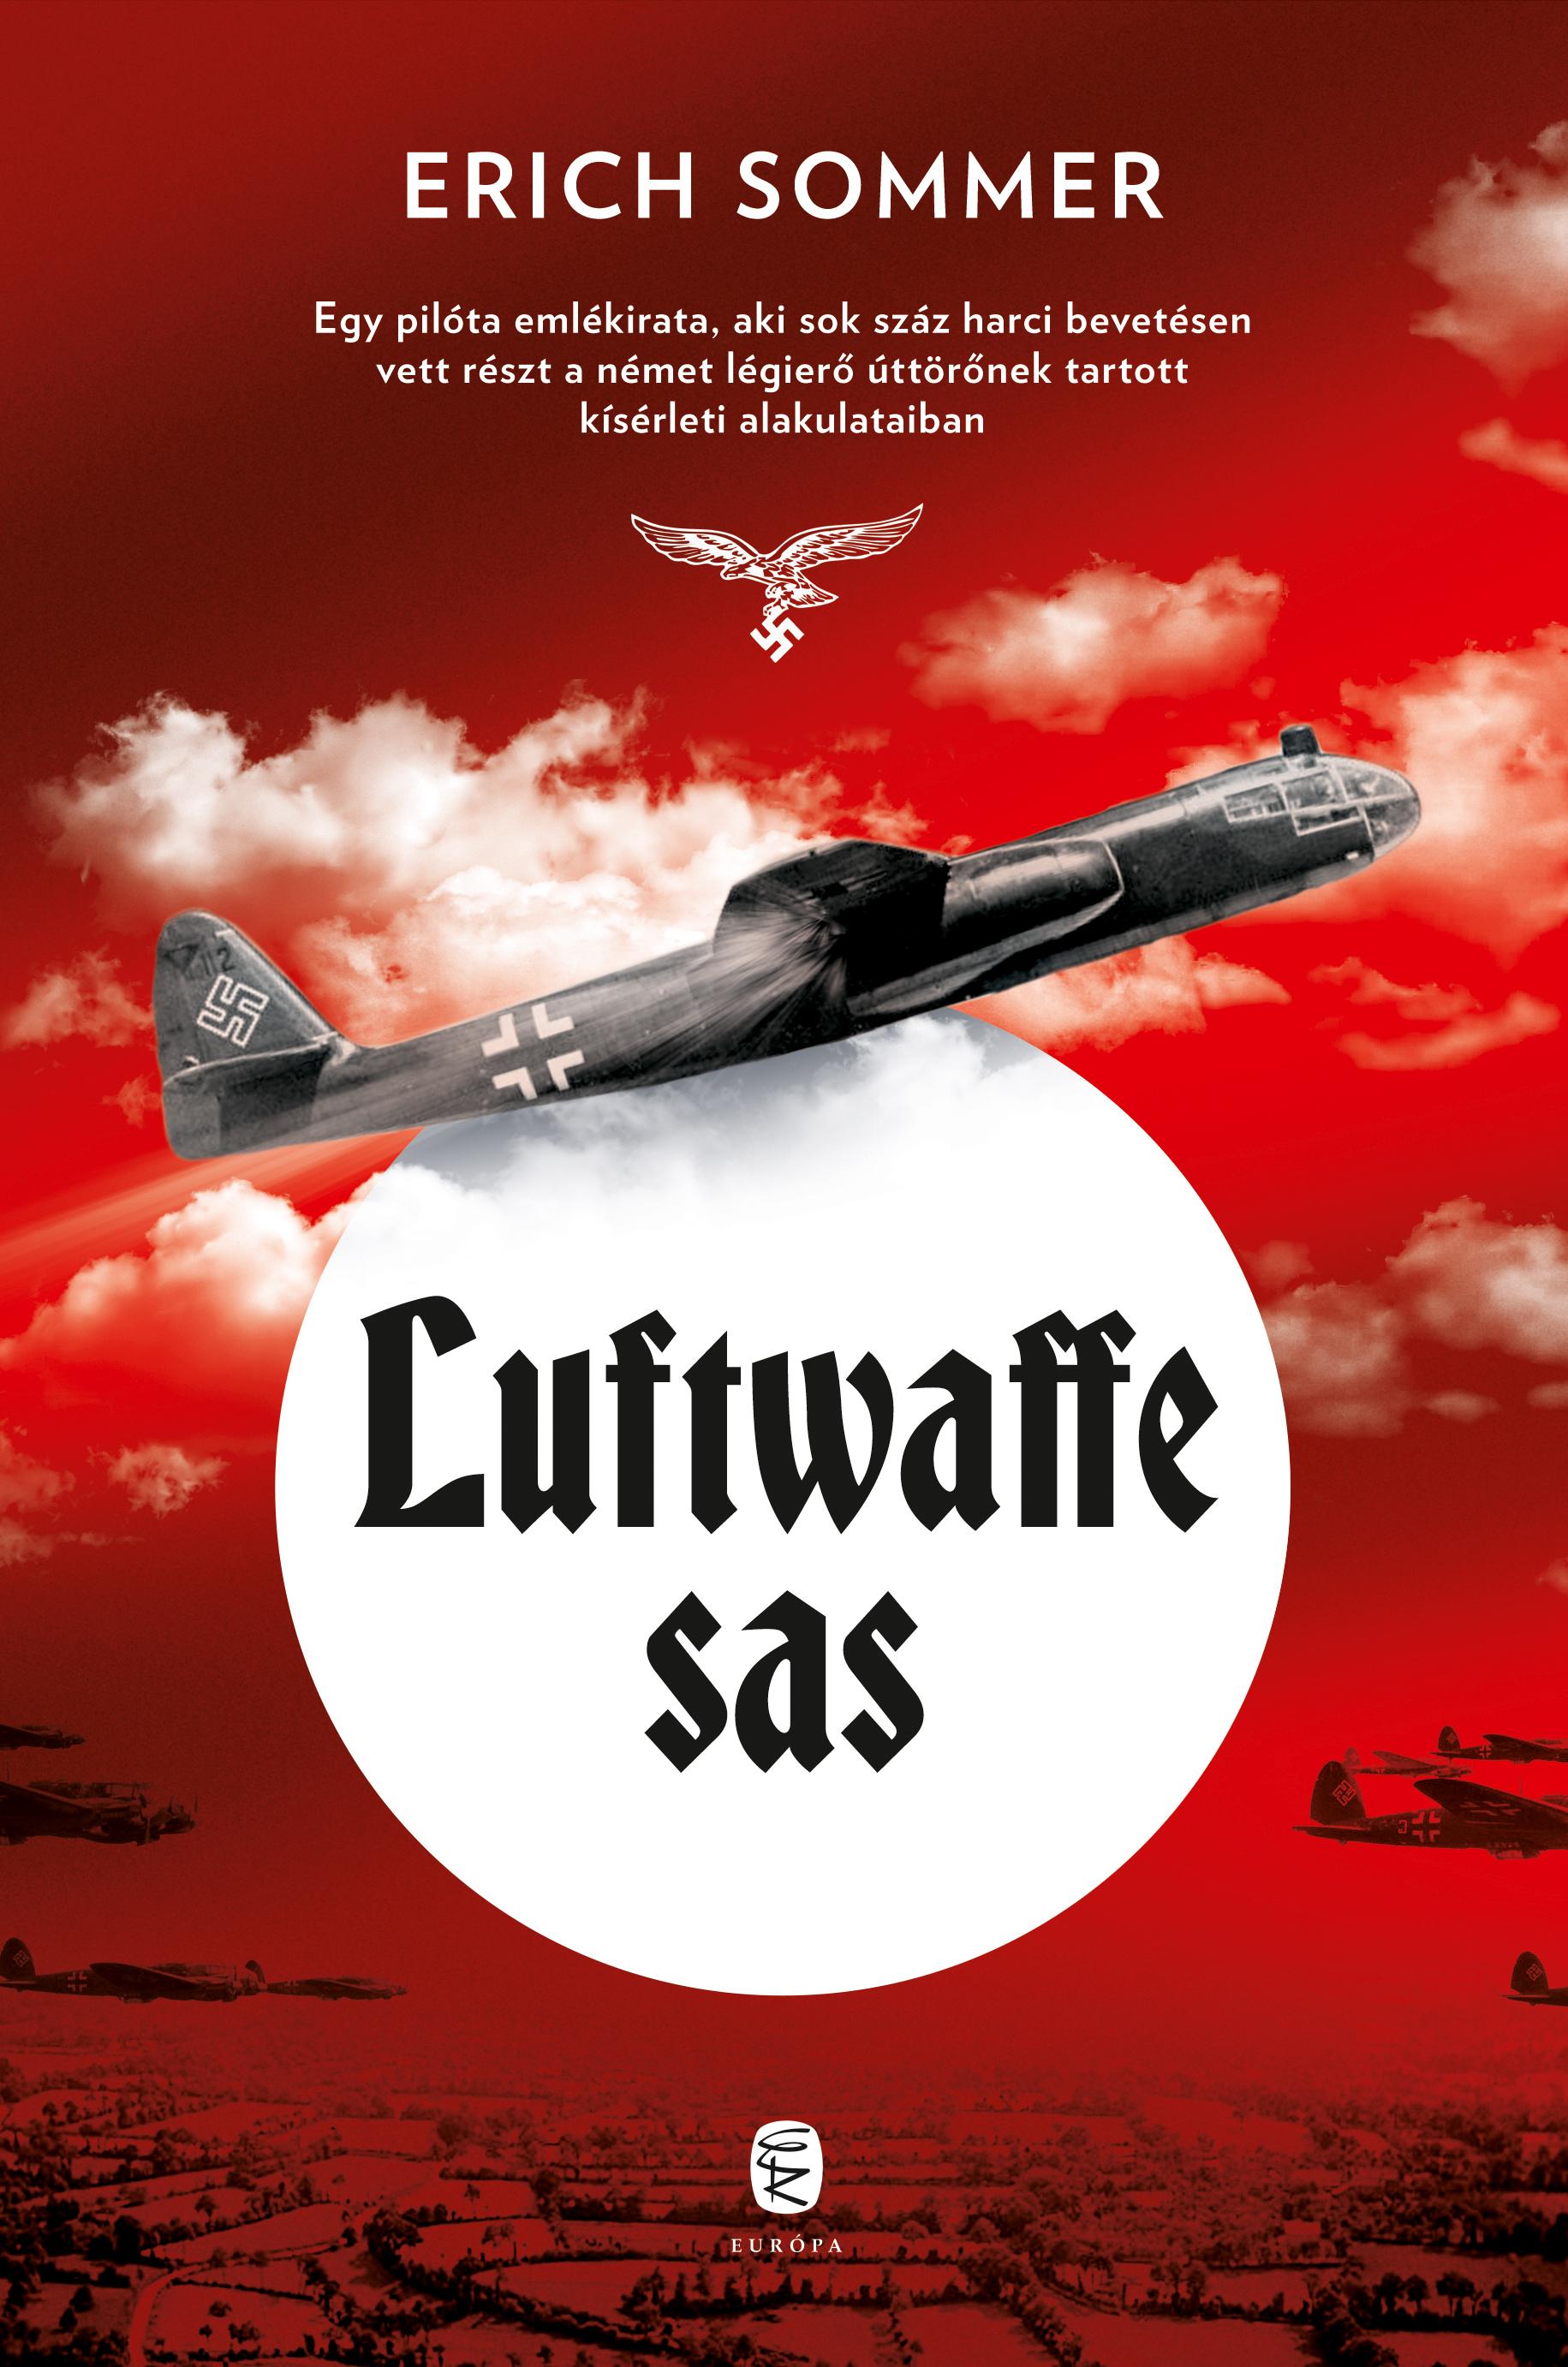 Sommer, Erich - Luftwaffe sas